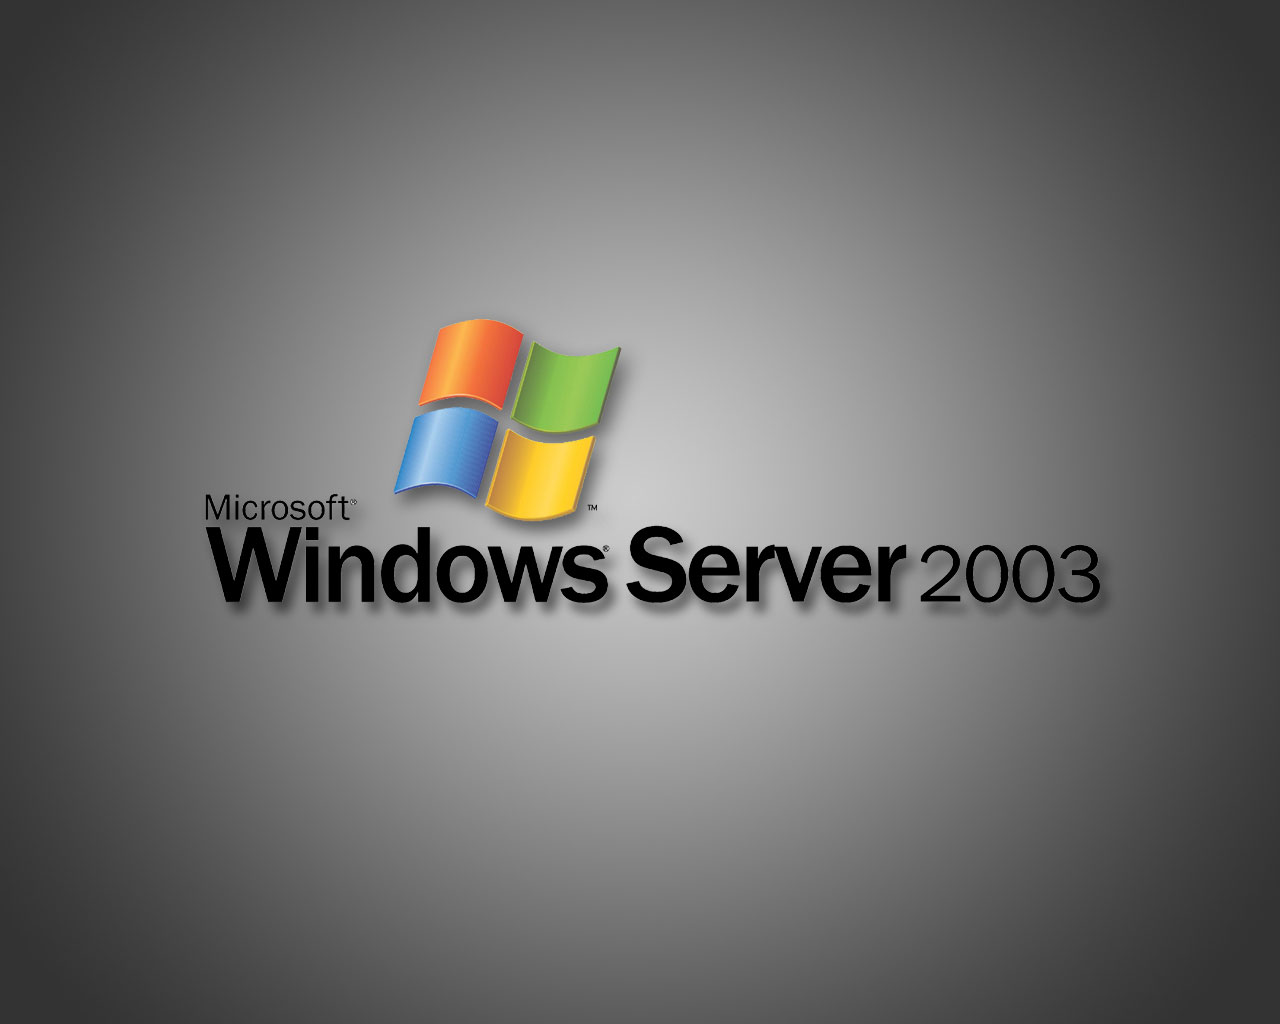 کاربران ویندوز 2003، قربانیان بزرگ هکرها